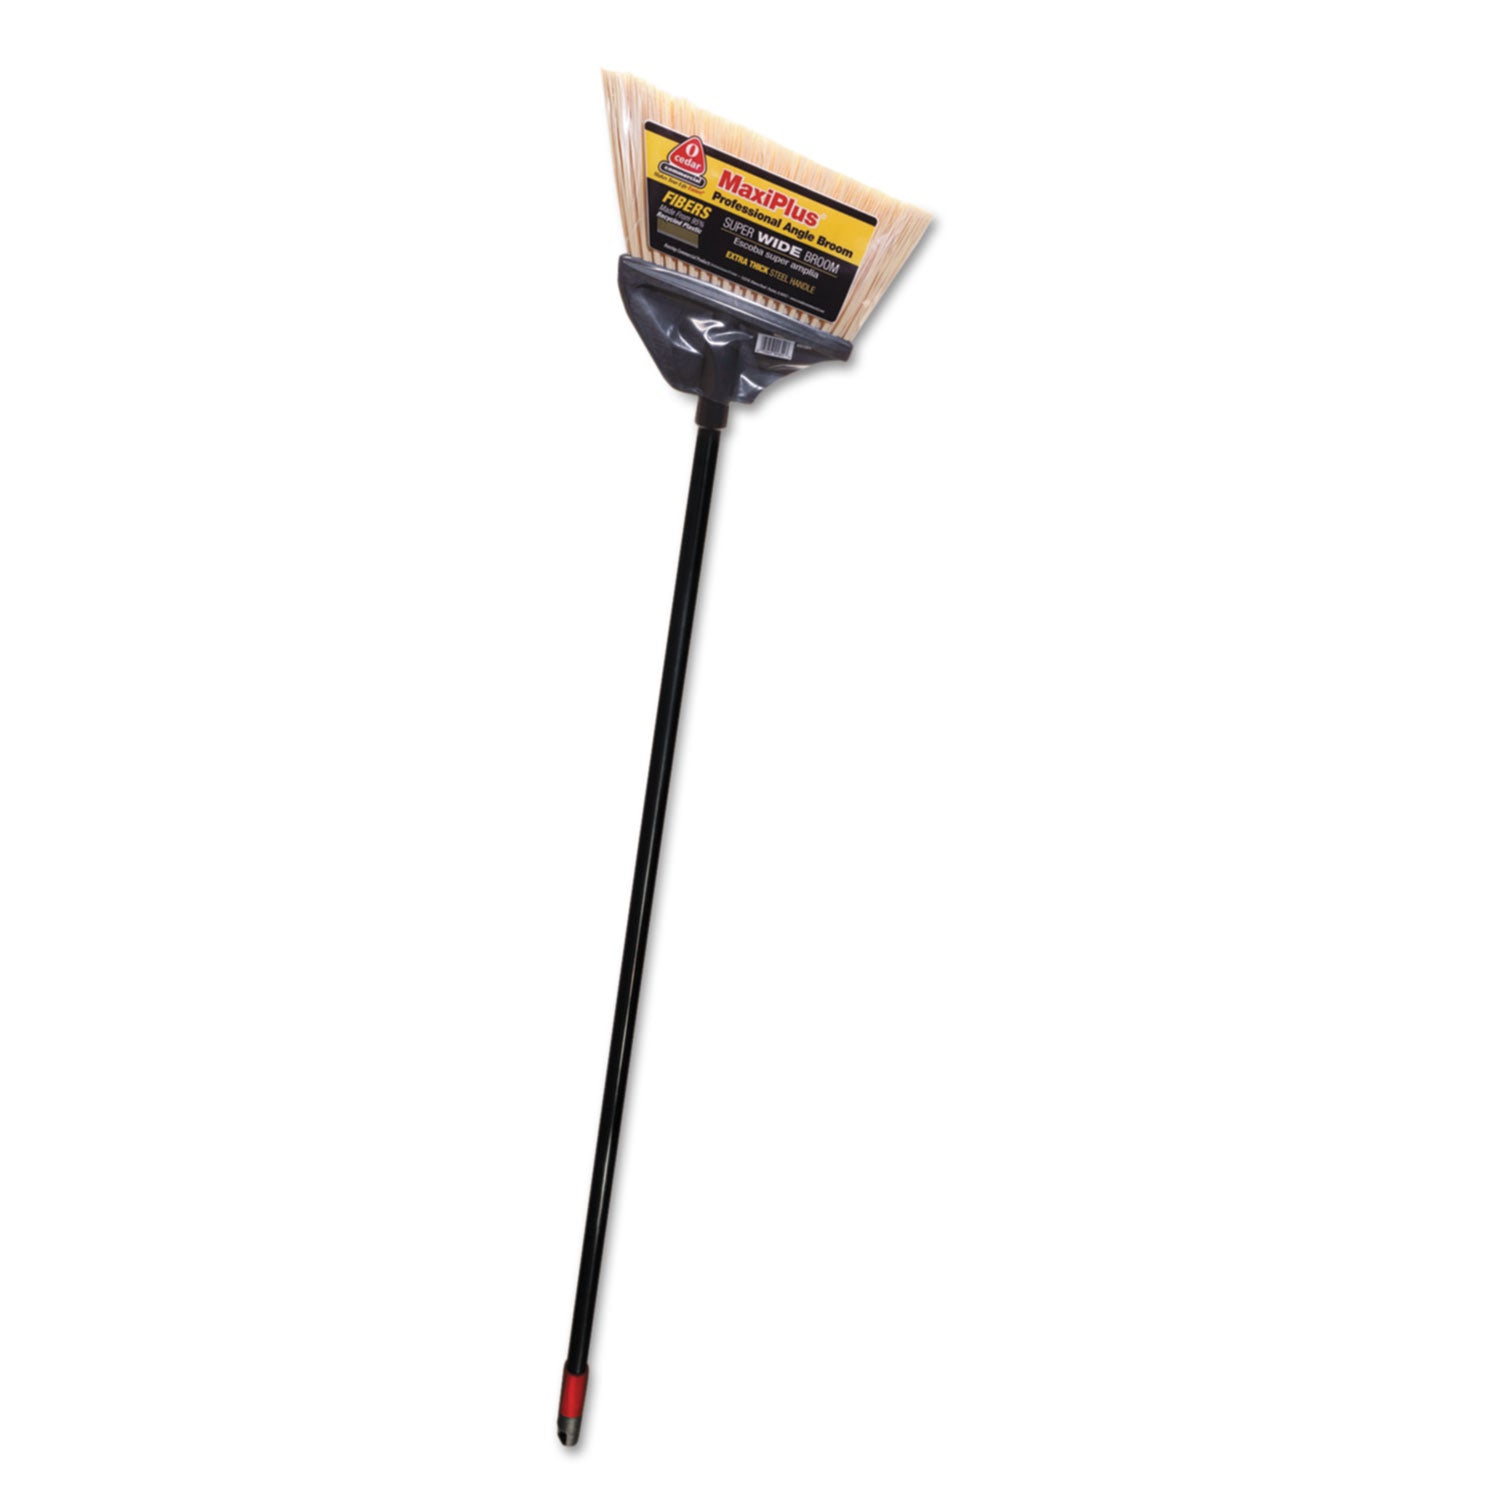 MaxiPlus Professional Angle Broom, 51" Handle, Black - 